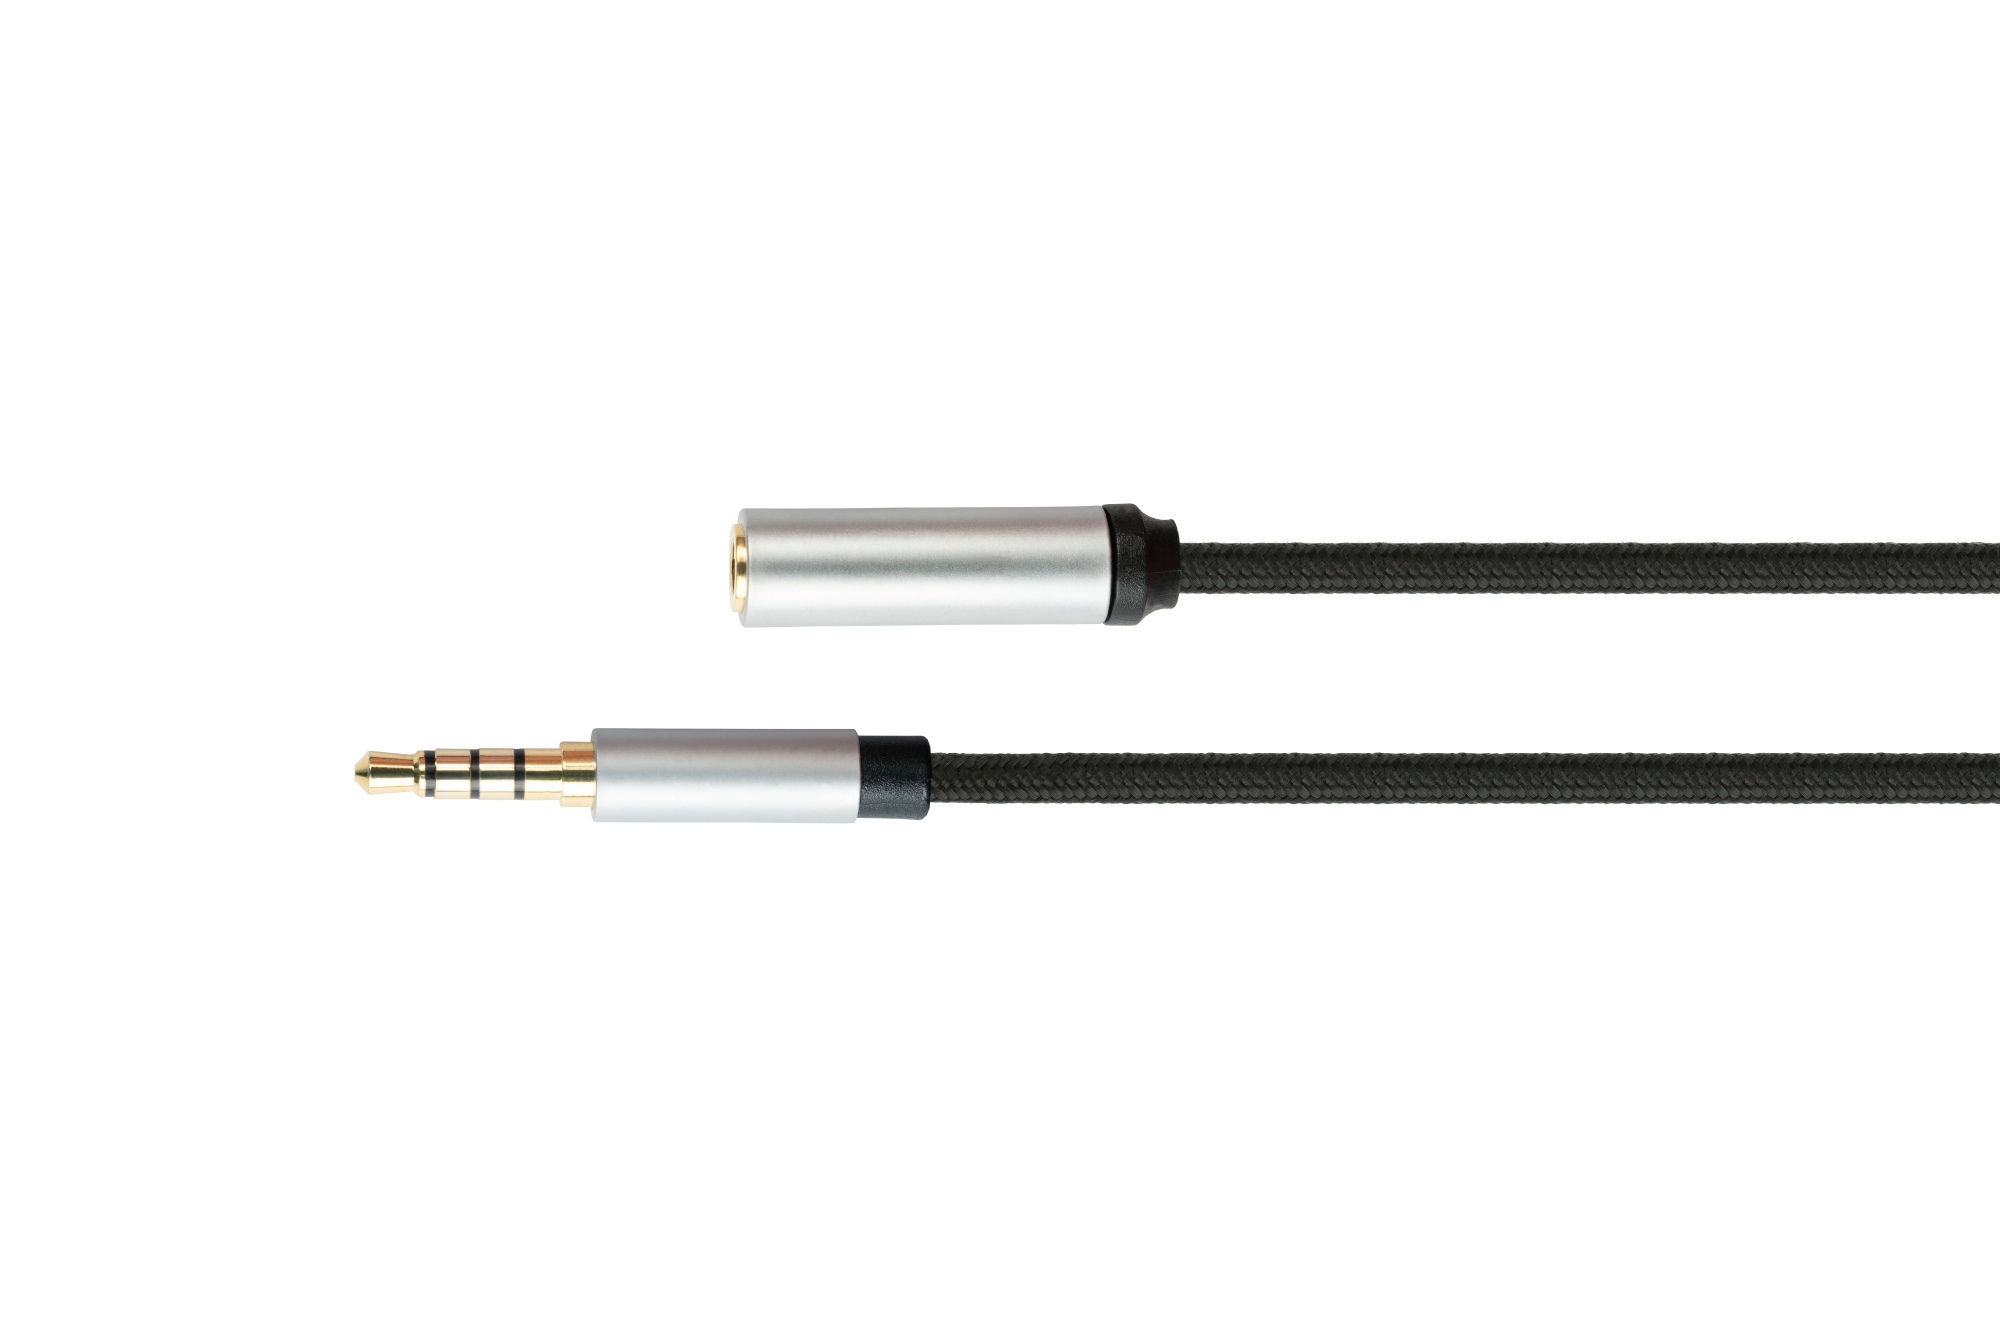 Audio Verlängerungskabel High-Quality, 4-poliger 3,5mm Klinkenstecker an Klinkenbuchse, Textilmantel